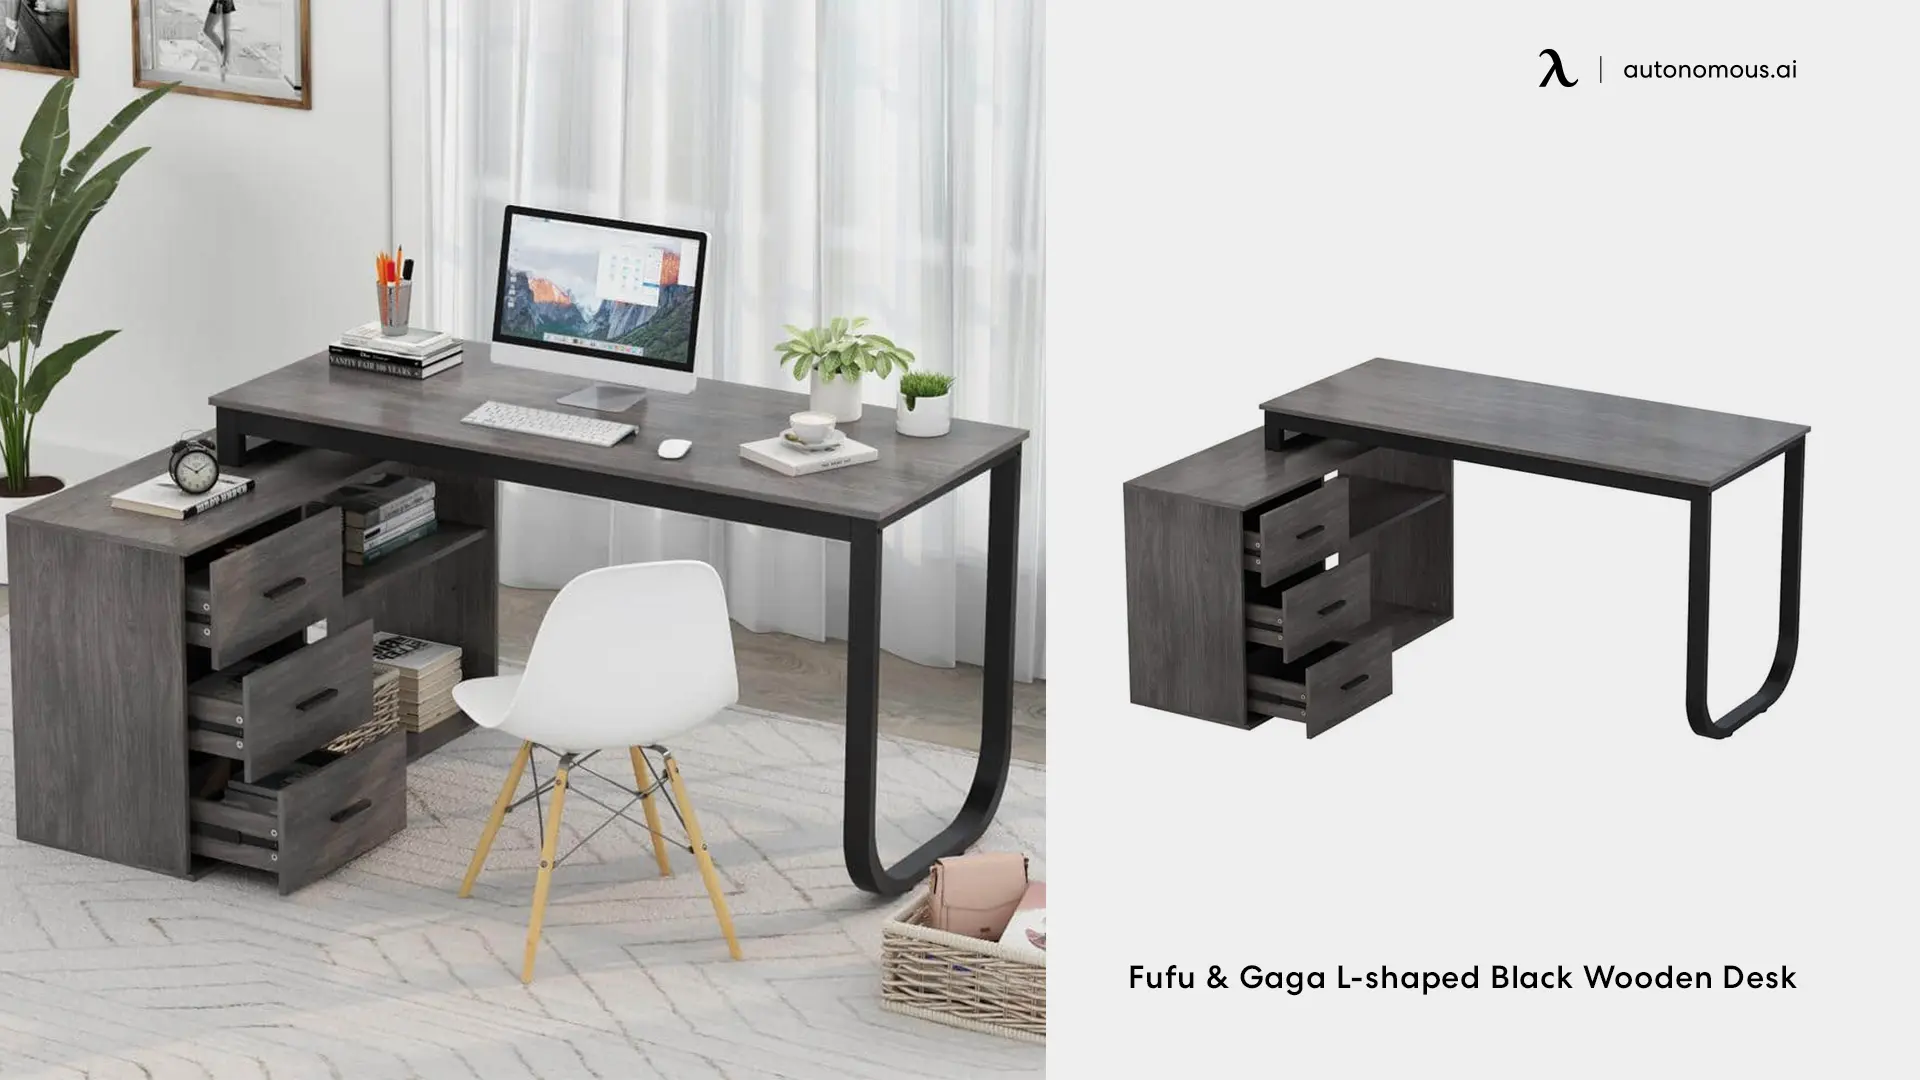 Fufu & Gaga L-shaped Black Wooden Desk